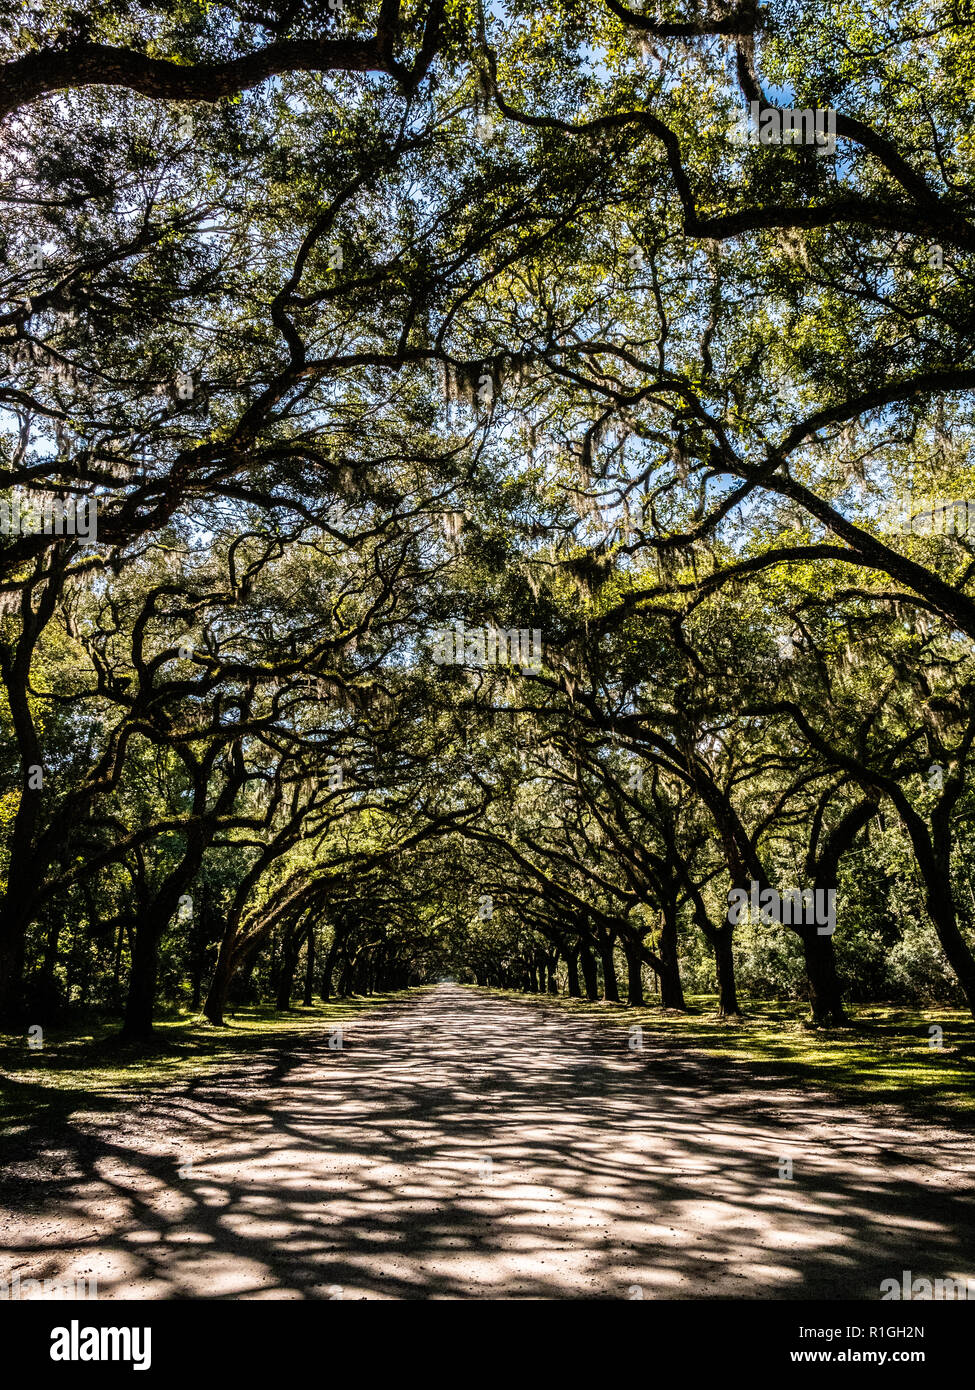 Der Antrieb bei Wormsloe Plantation Immobilien auf Hope Island Savannah Georgia USA, die überragt wird von live oak Zweigen geschmückt mit spanischem Moos Stockfoto